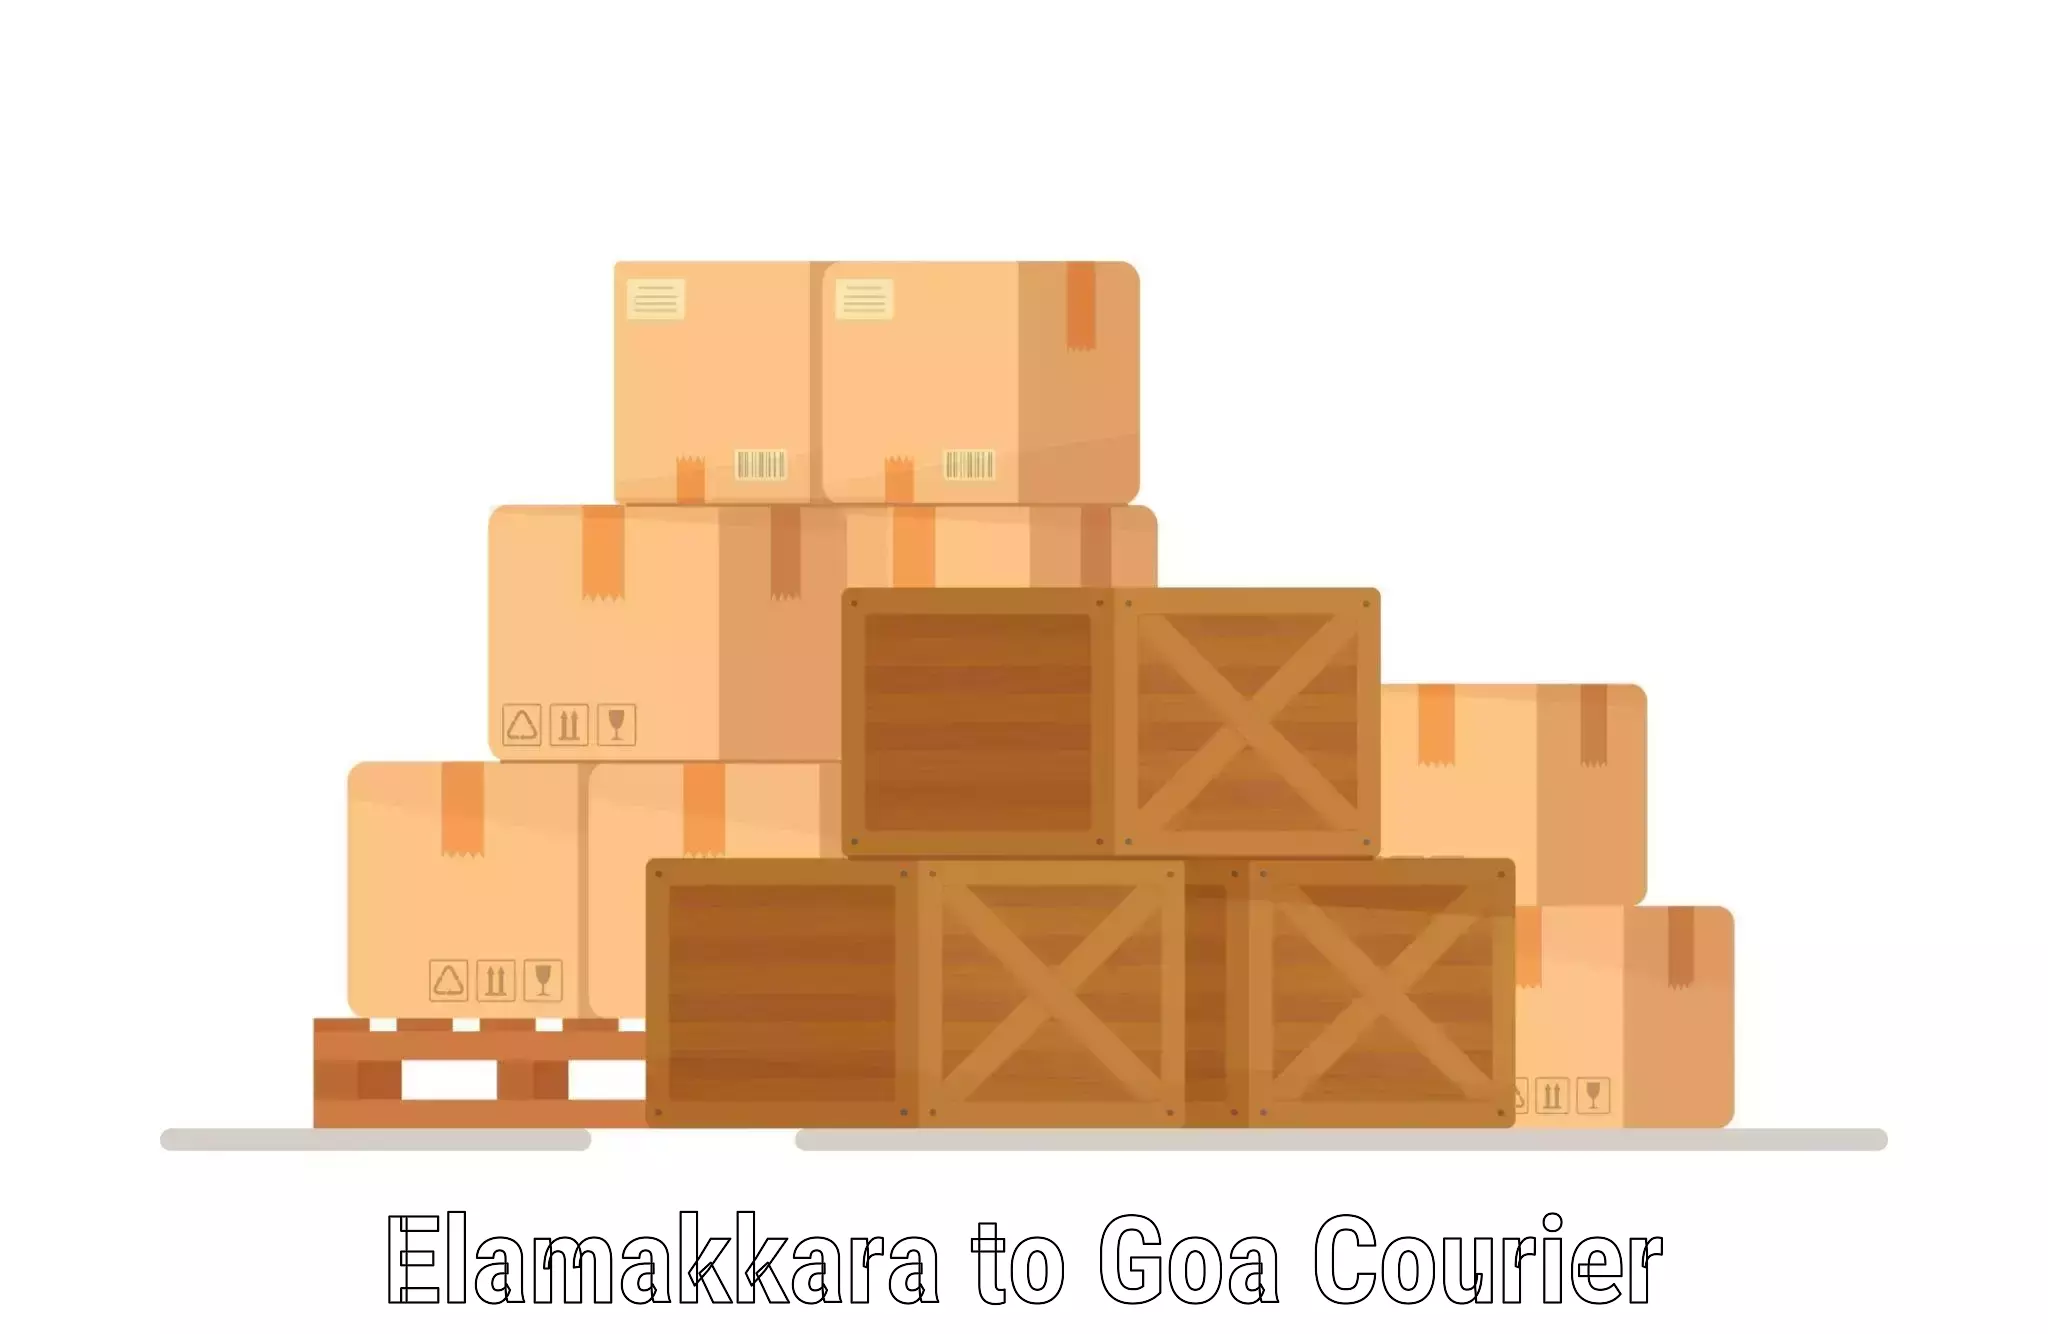 Efficient parcel service Elamakkara to Goa